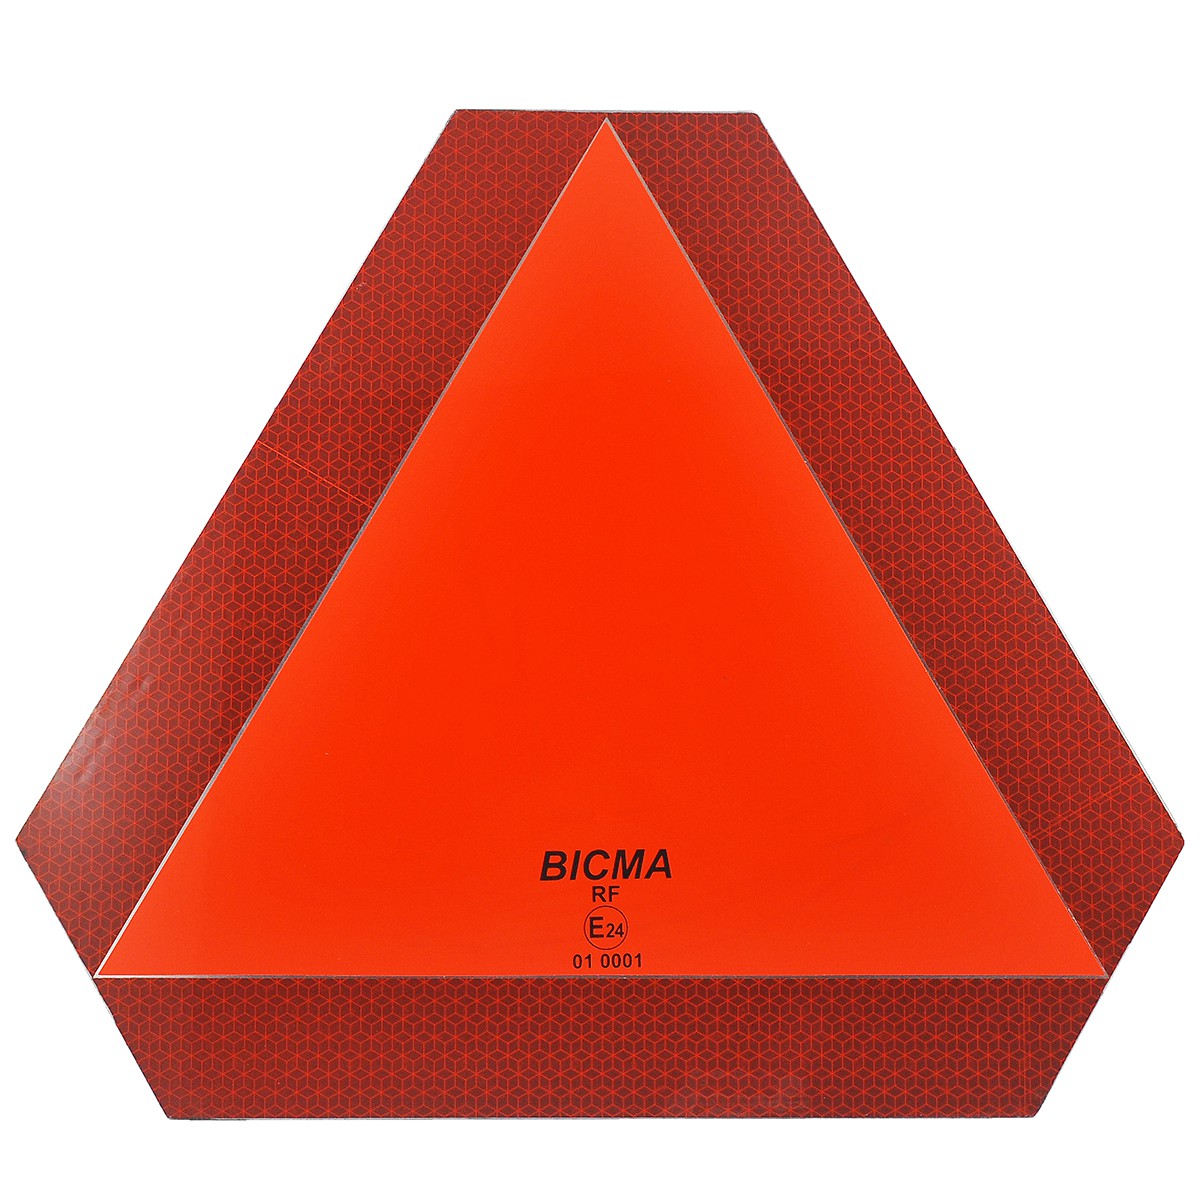 Reflexní trojúhelník pro přívěs / ECE 69 01 / E24 / 40-70070 / 01 0001 / BICMA